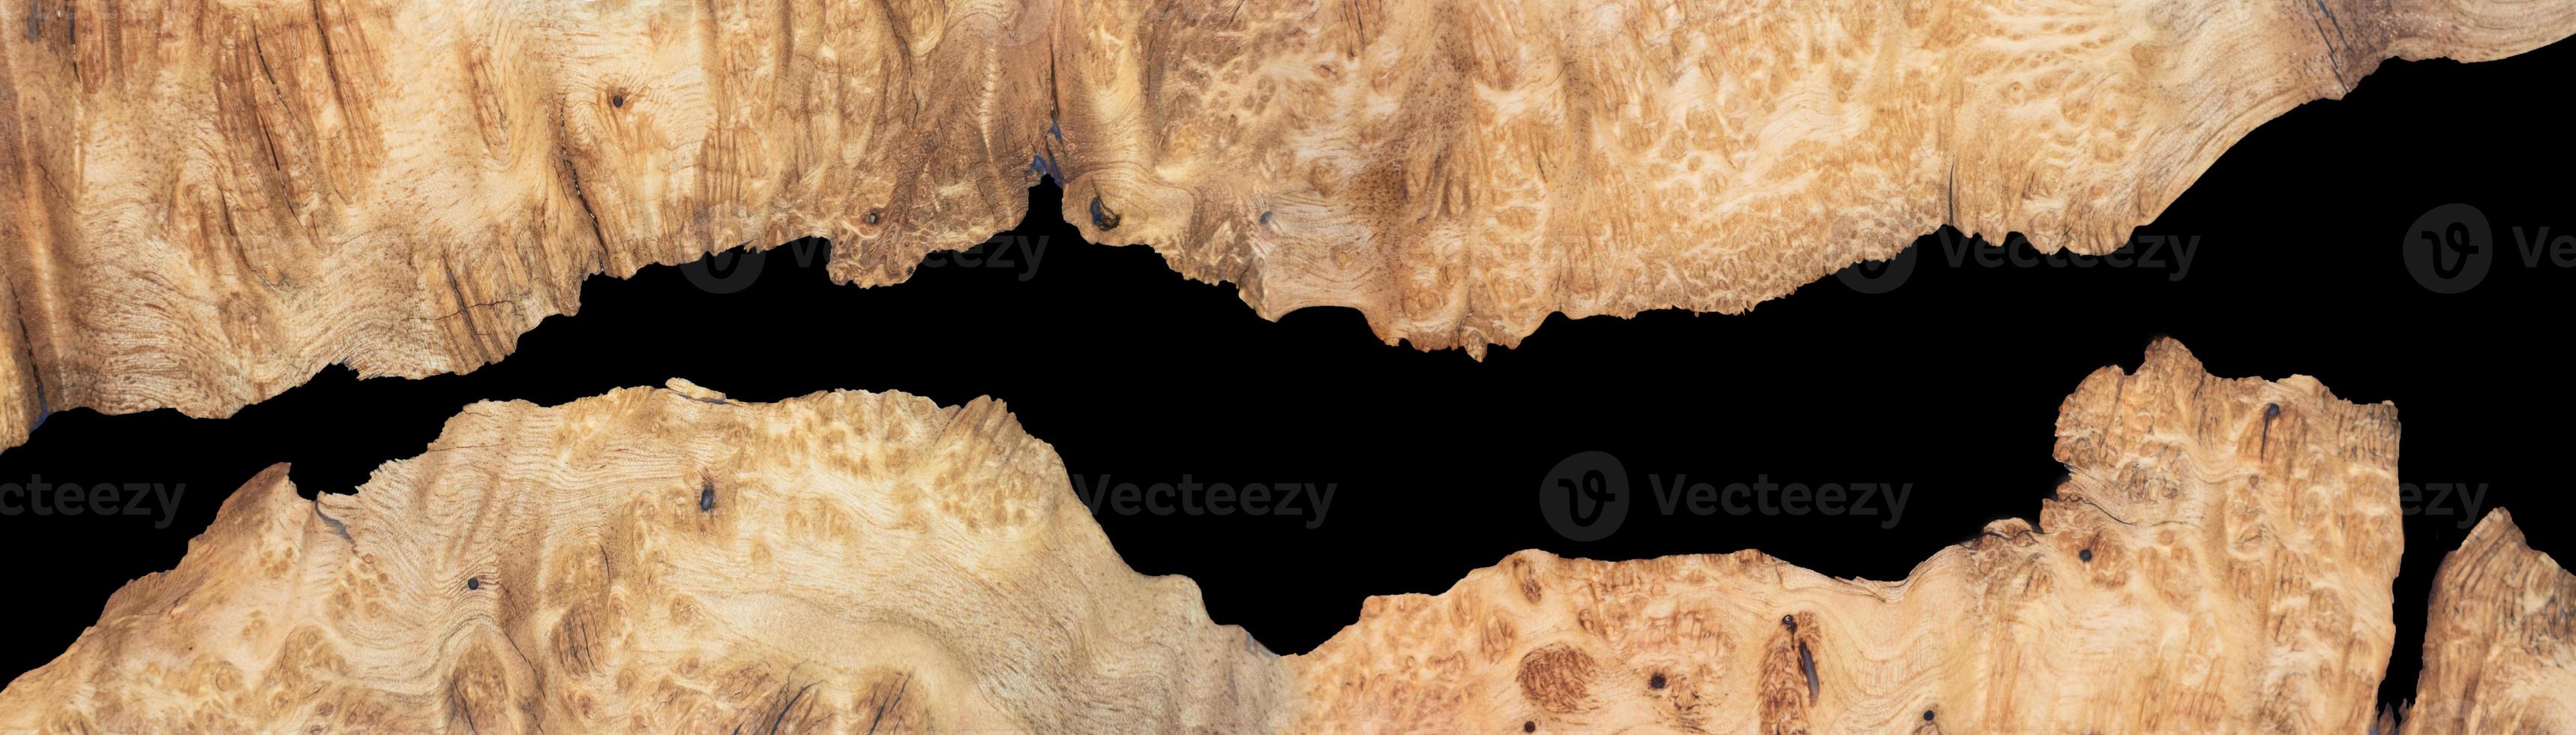 gieten epoxyhars paneel met walnoot wortelhout, bovenaanzicht van hout voor de achtergrond foto